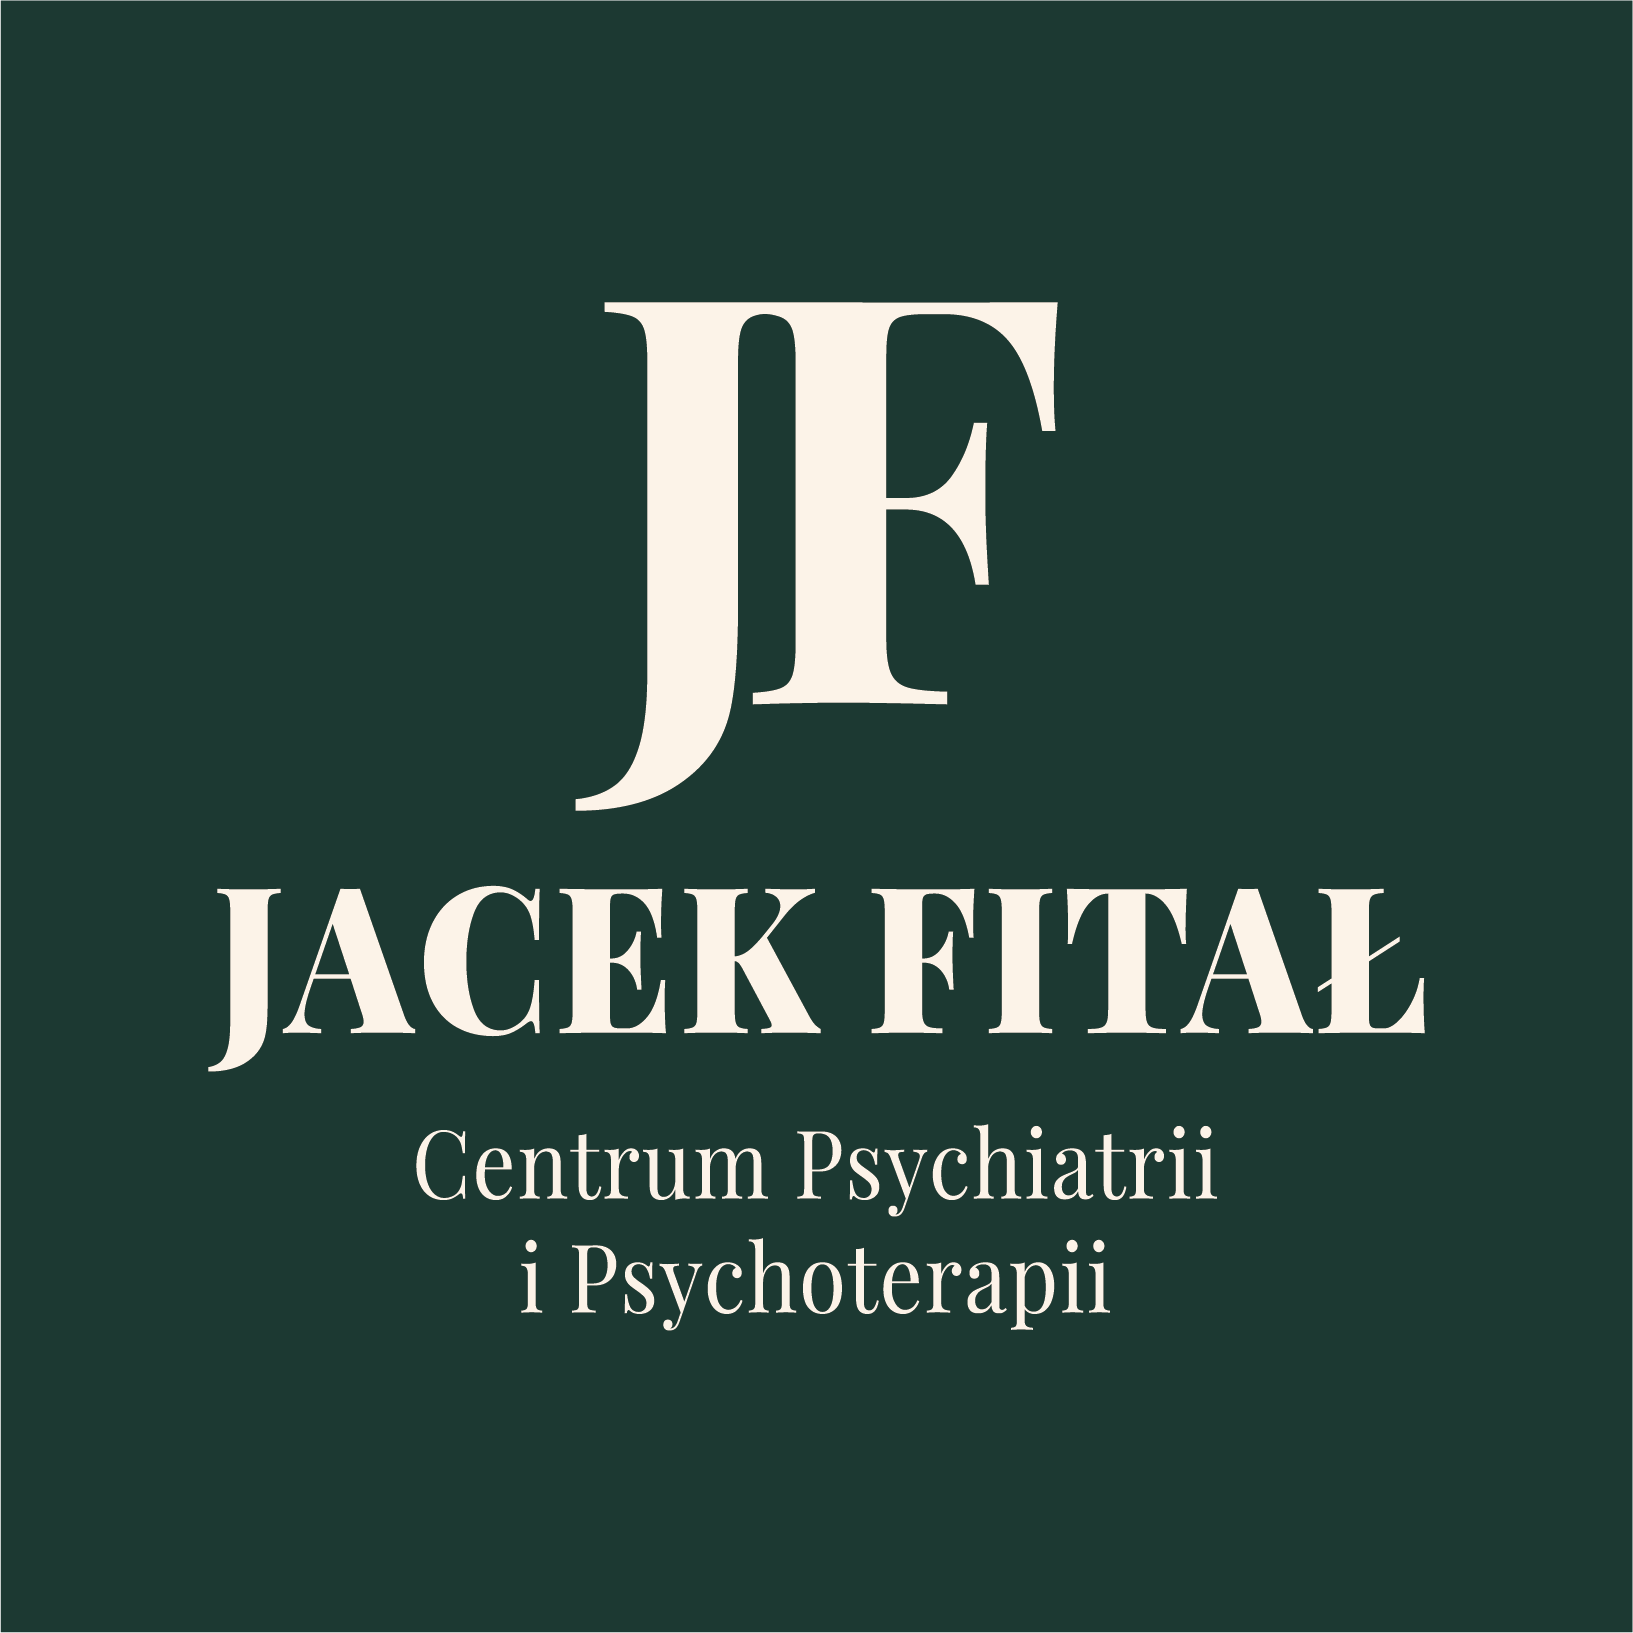 Jacek Fitał – Centrum Psychiatrii i Psychoterapii